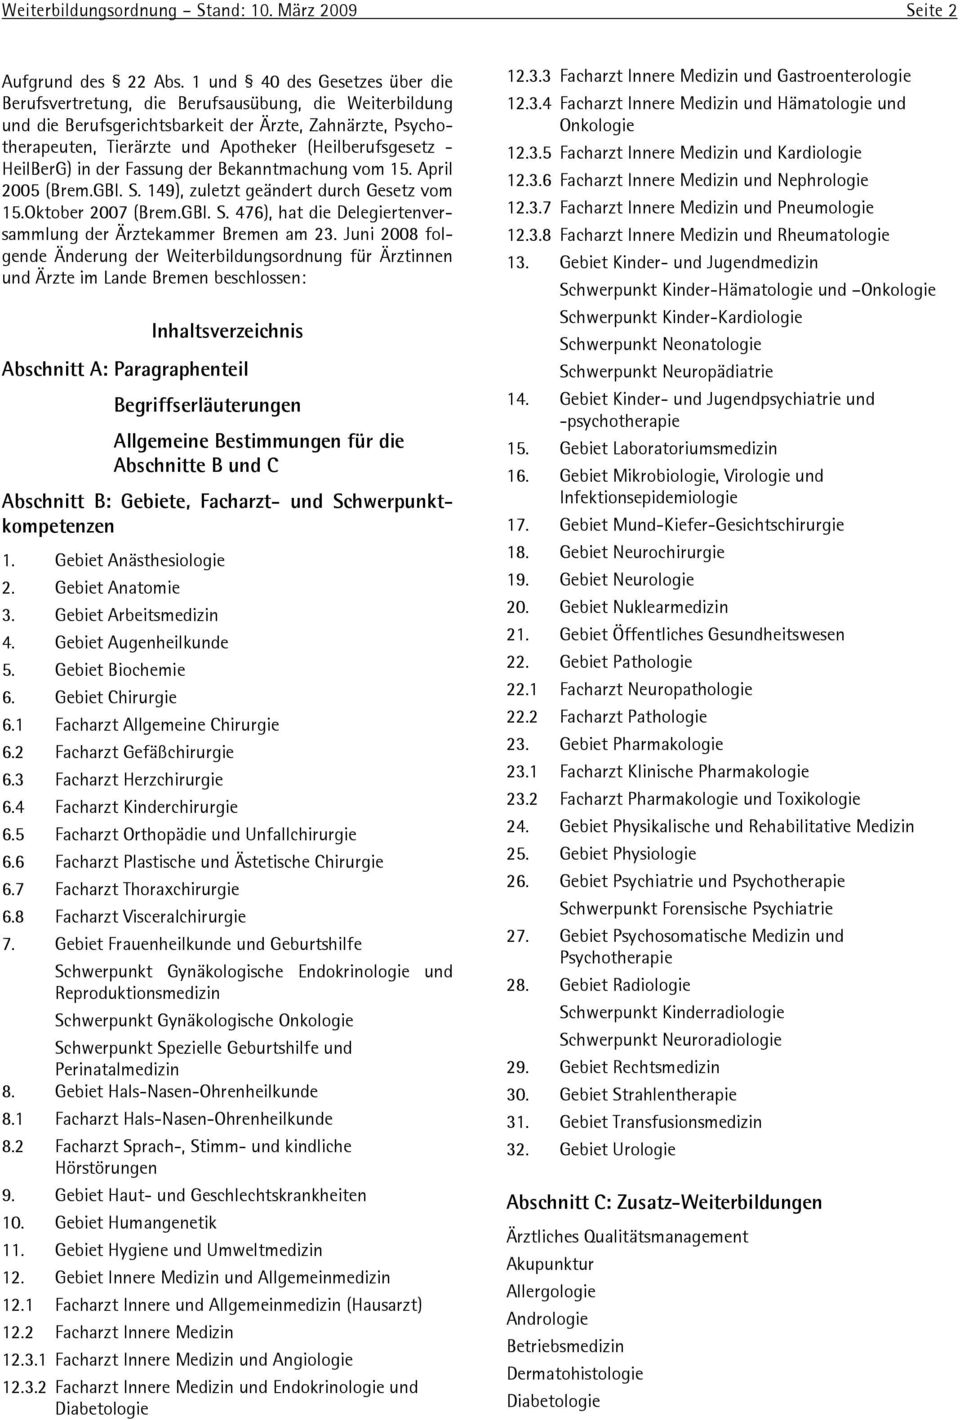 - HeilBerG) in der Fassung der Bekanntmachung vom 15. April 2005 (Brem.GBl. S. 149), zuletzt geändert durch Gesetz vom 15.Oktober 2007 (Brem.GBl. S. 476), hat die Delegiertenversammlung der Ärztekammer Bremen am 23.